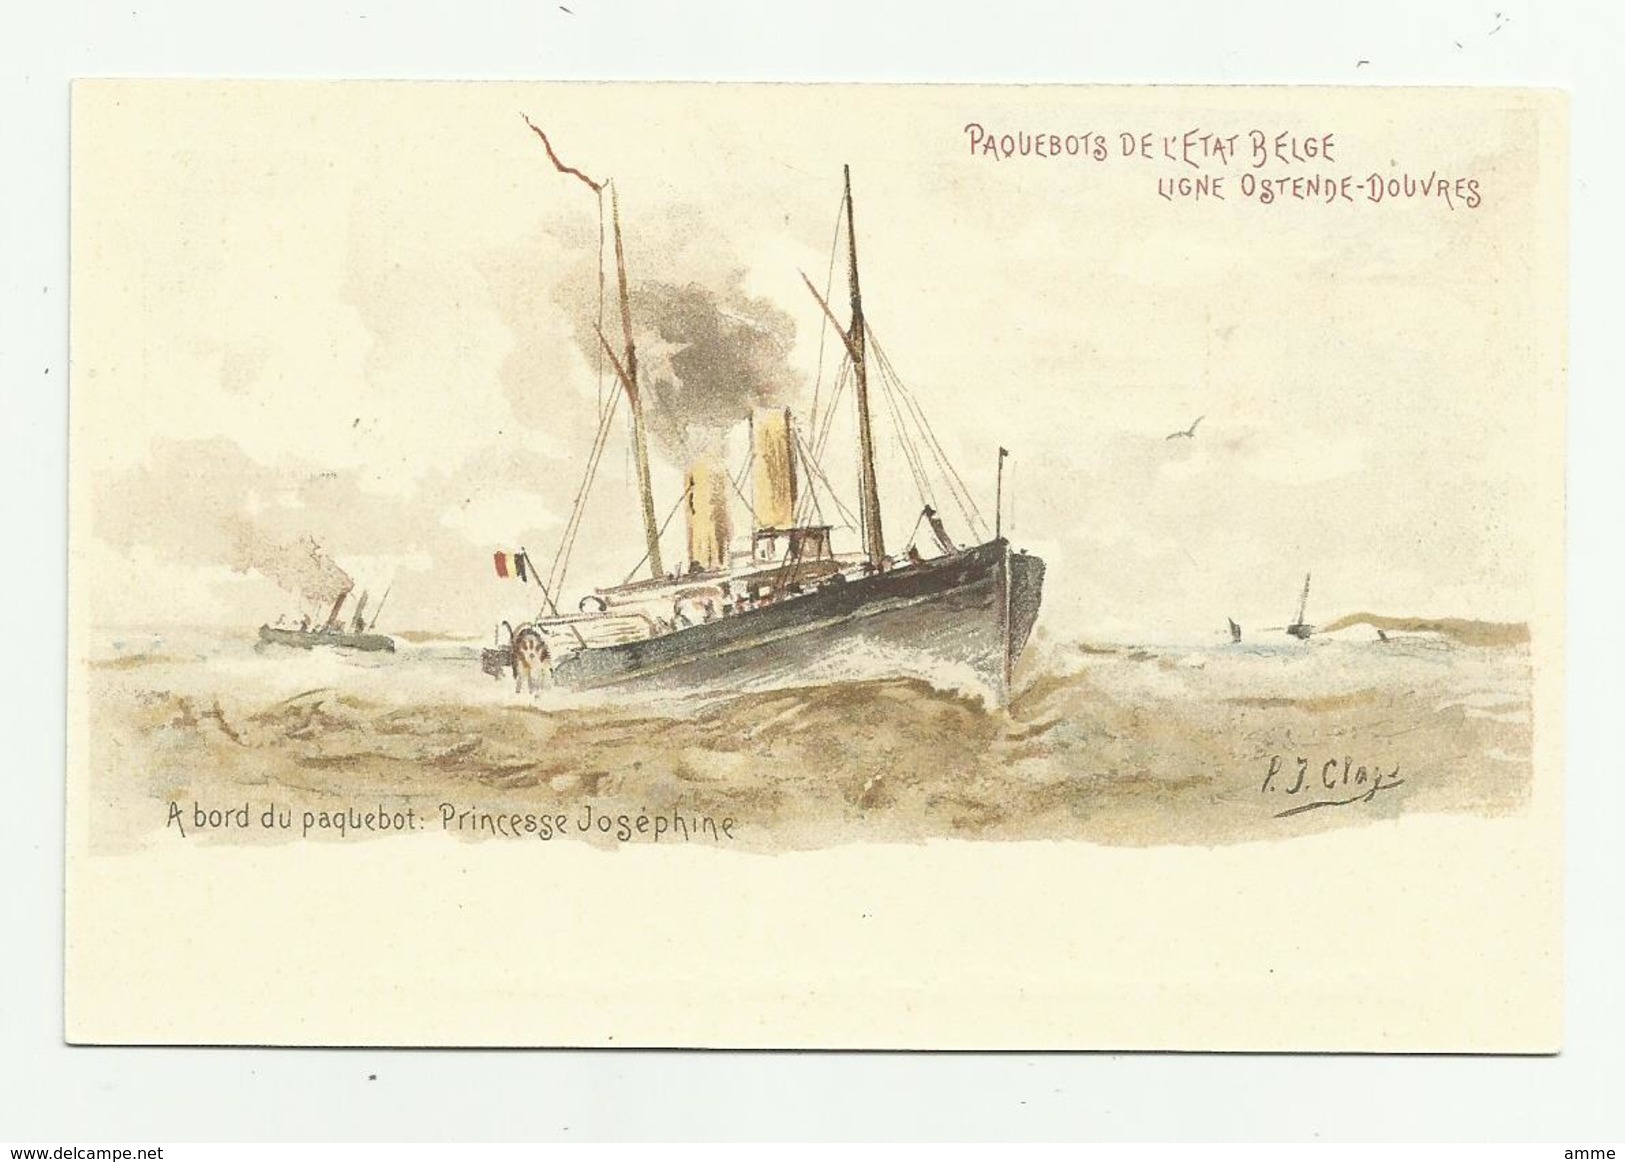 Oostende  *   A Bord Du Paquebot De L'Etat Belge, Ligne Ostende - Douvres  - Princesse Josephine  (P.J. Clays) - Schiffspost